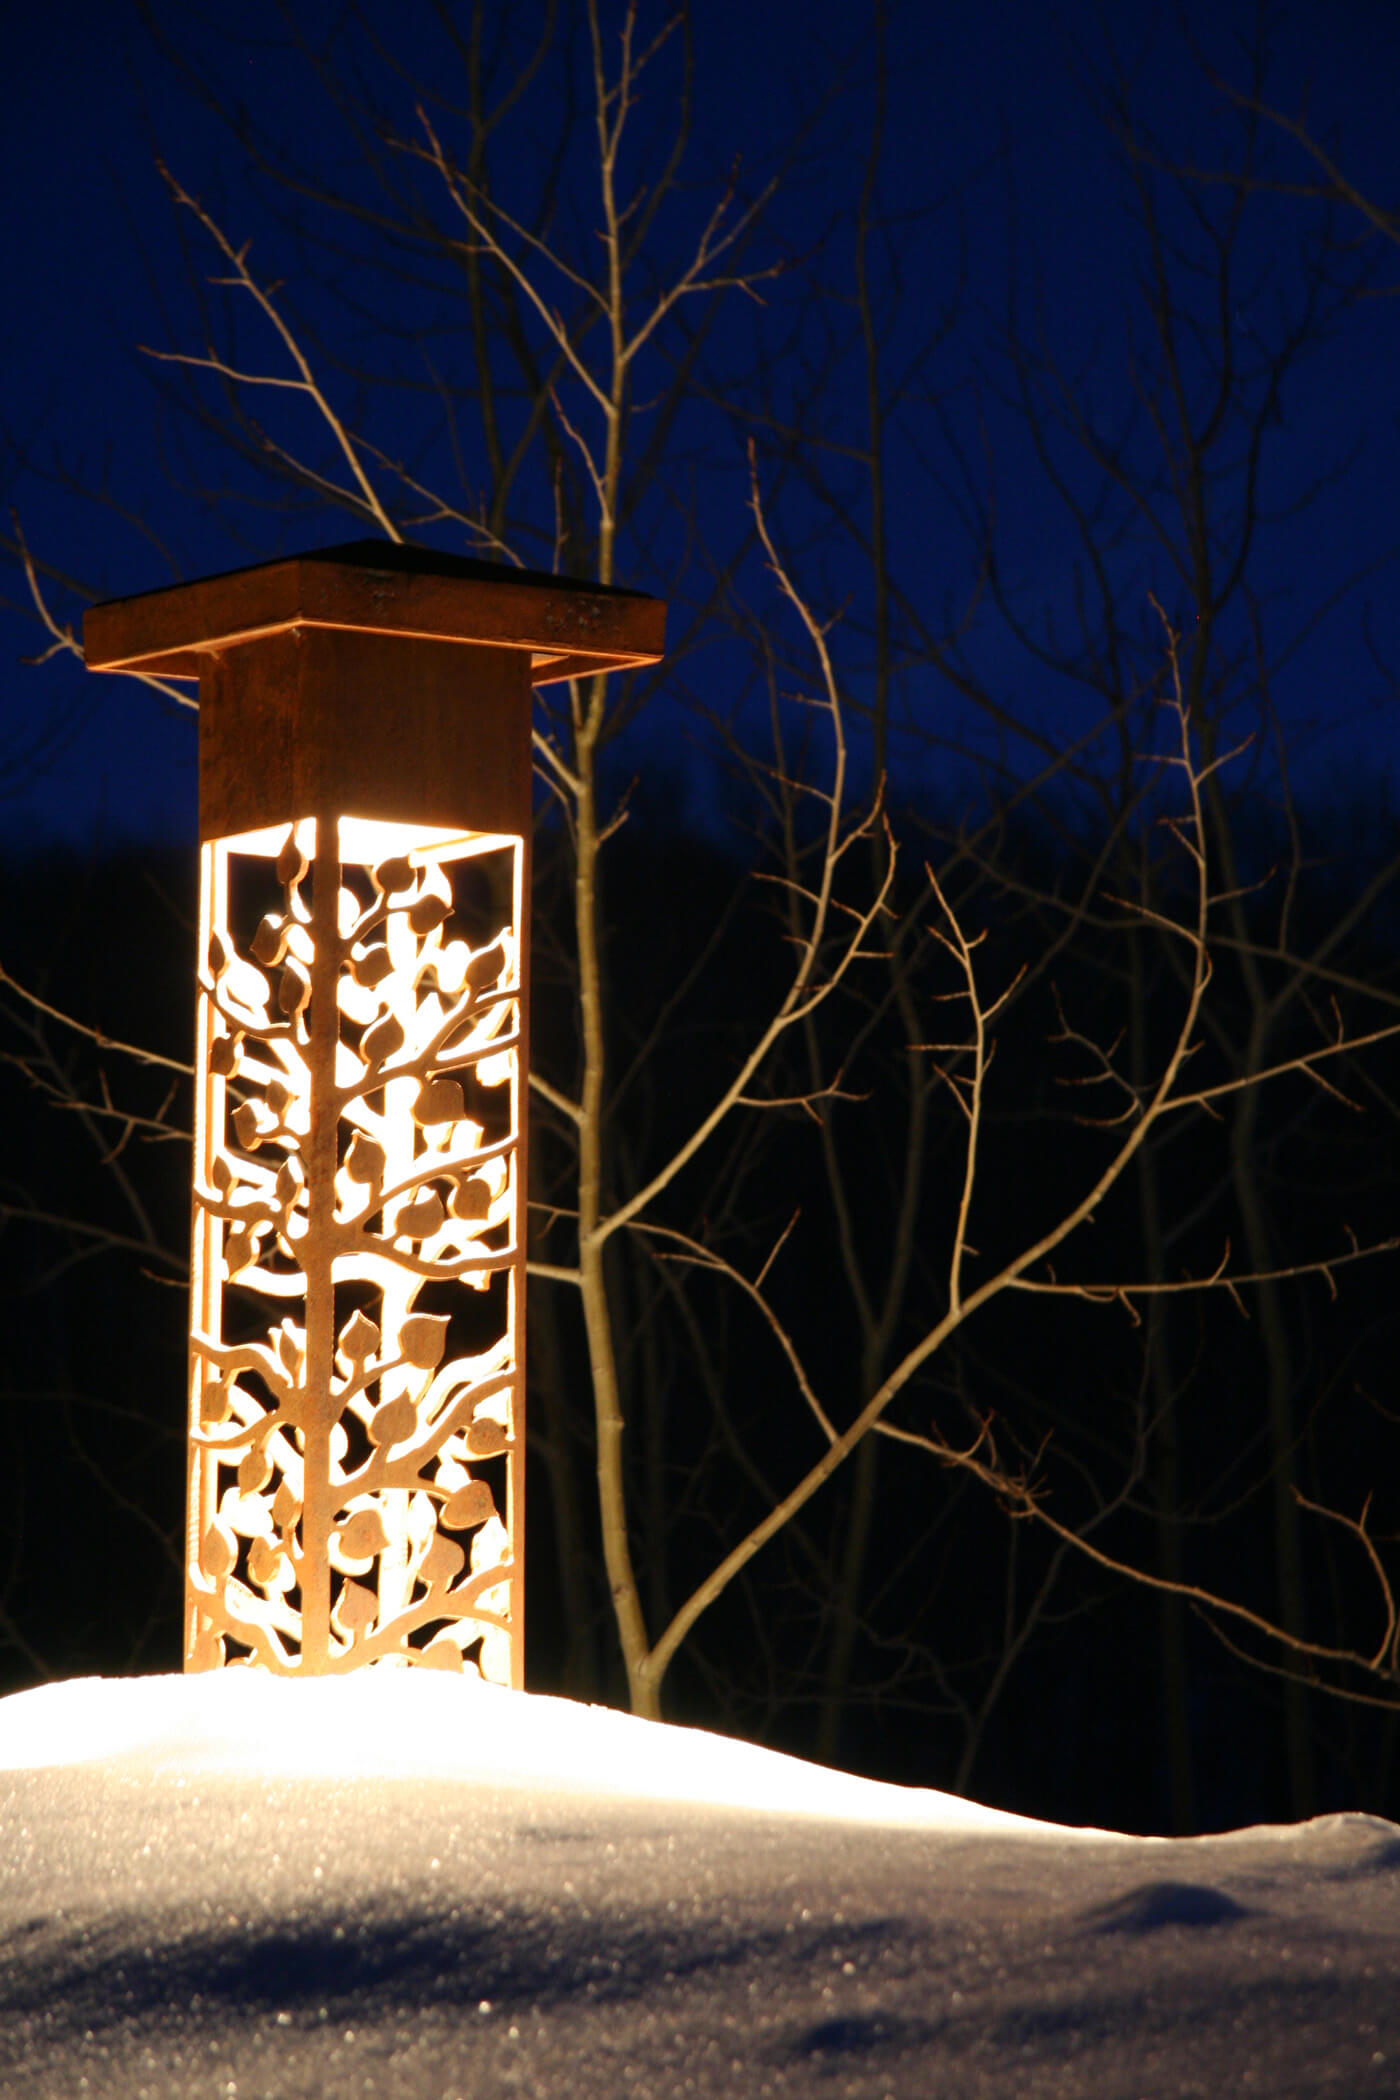 Decorative outdoor lighting in snow